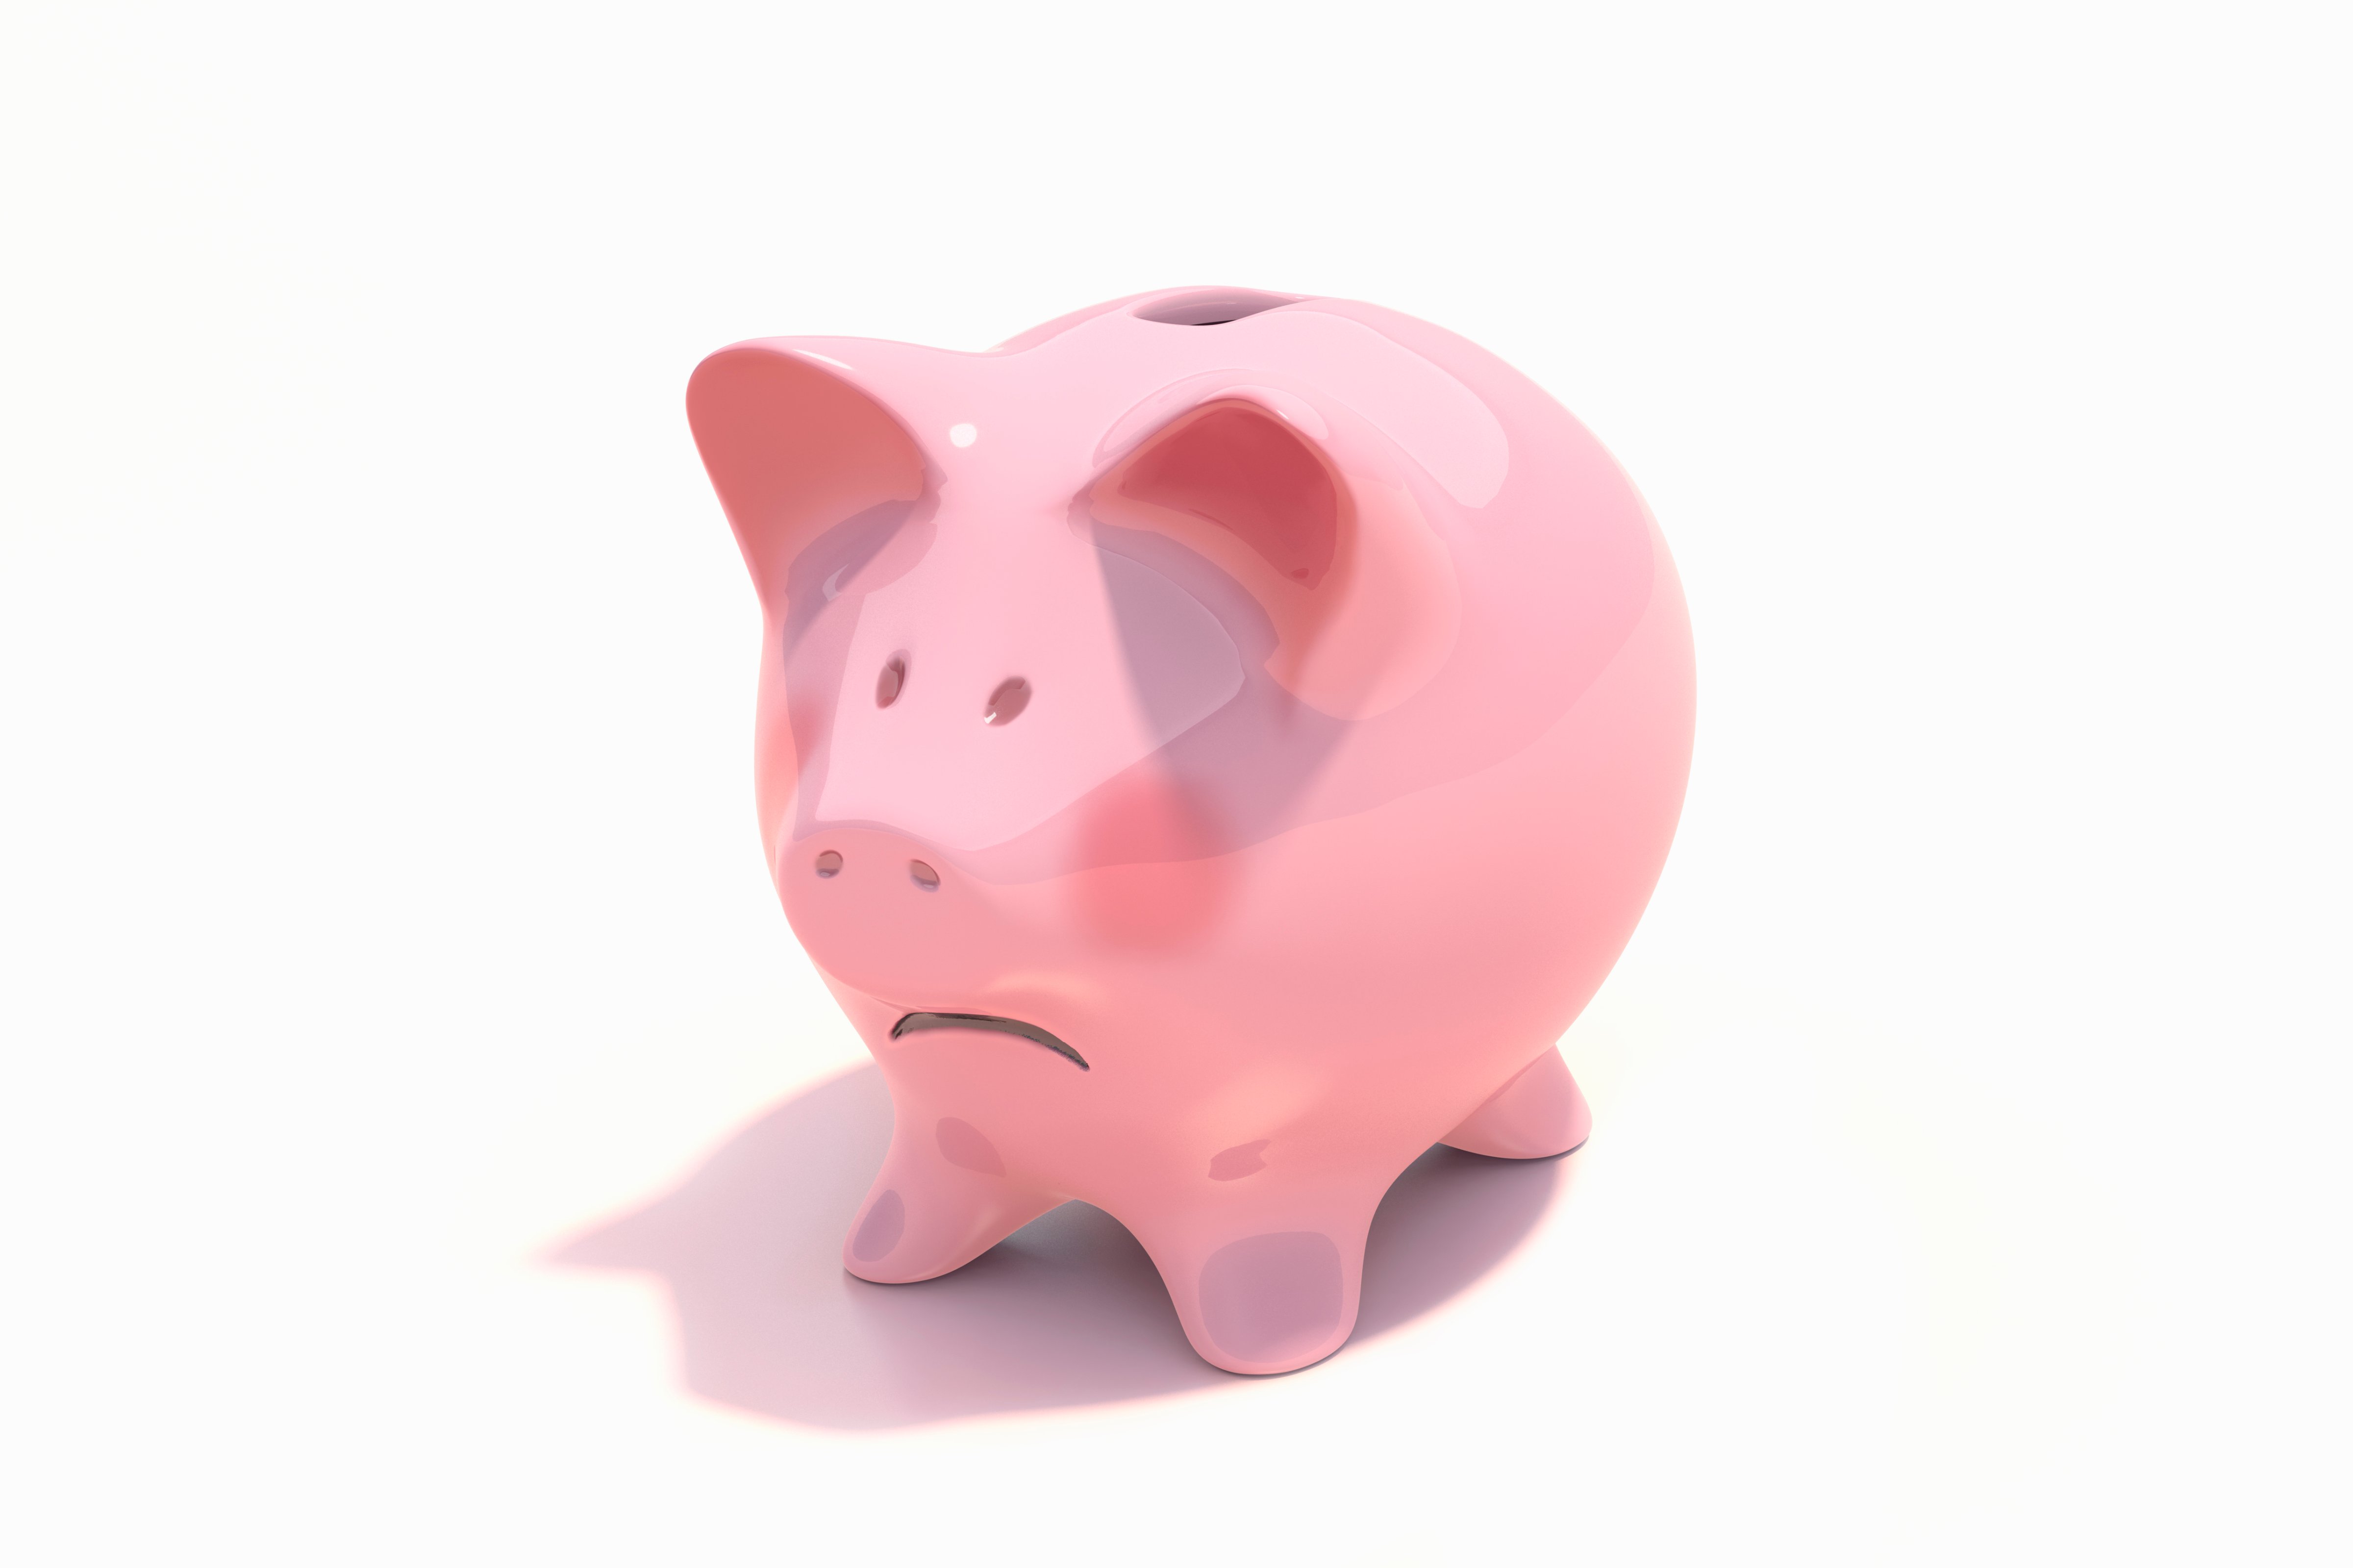 Sad piggy bank